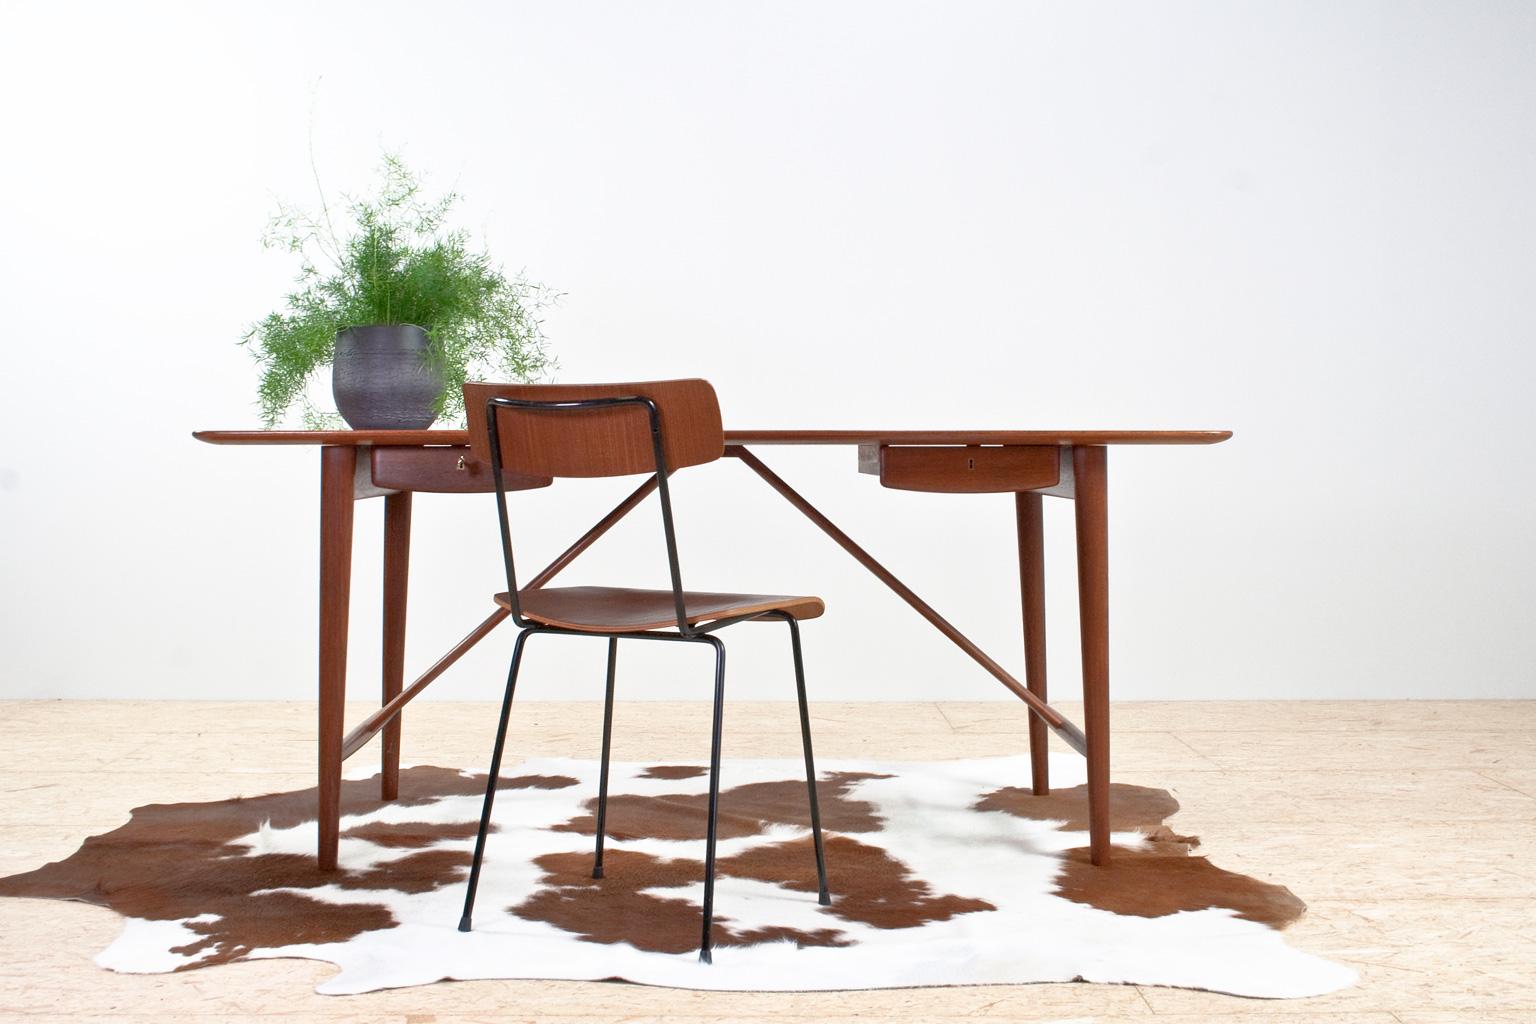 Scandinavian Modern elegant Peter Hvidt (1916-1986) and Orla Mølgaard-Nielsen (1907-1993) desk, designed in 1955 (model 301) for Søborg Møbler. The item features a solid wooden teak tabletop and elegant tapered legs. The desk has two deep drawers